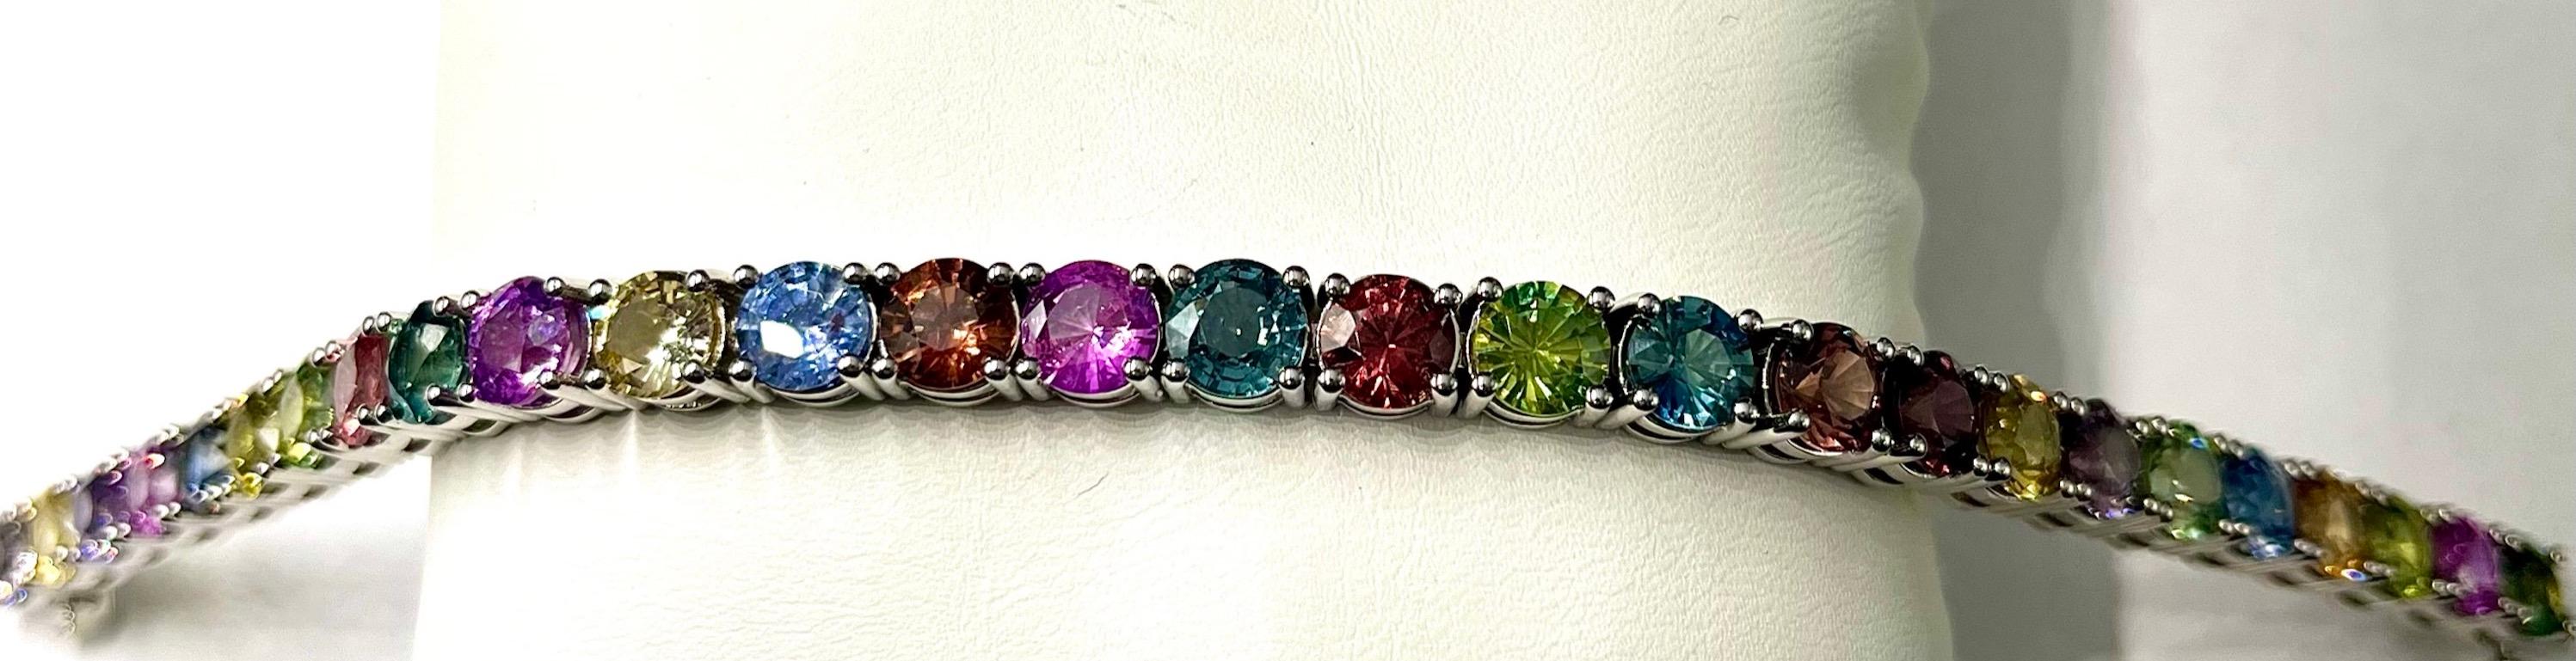 Dies ist ein absolut schönes Armband mit einem Regenbogen Array von Farben der natürlichen runden Saphiren. Diese Saphire sind sehr sauber und die Farben sind leuchtend, satt und hochbrillant. Diese Farbkombination bietet eine große Vielfalt an